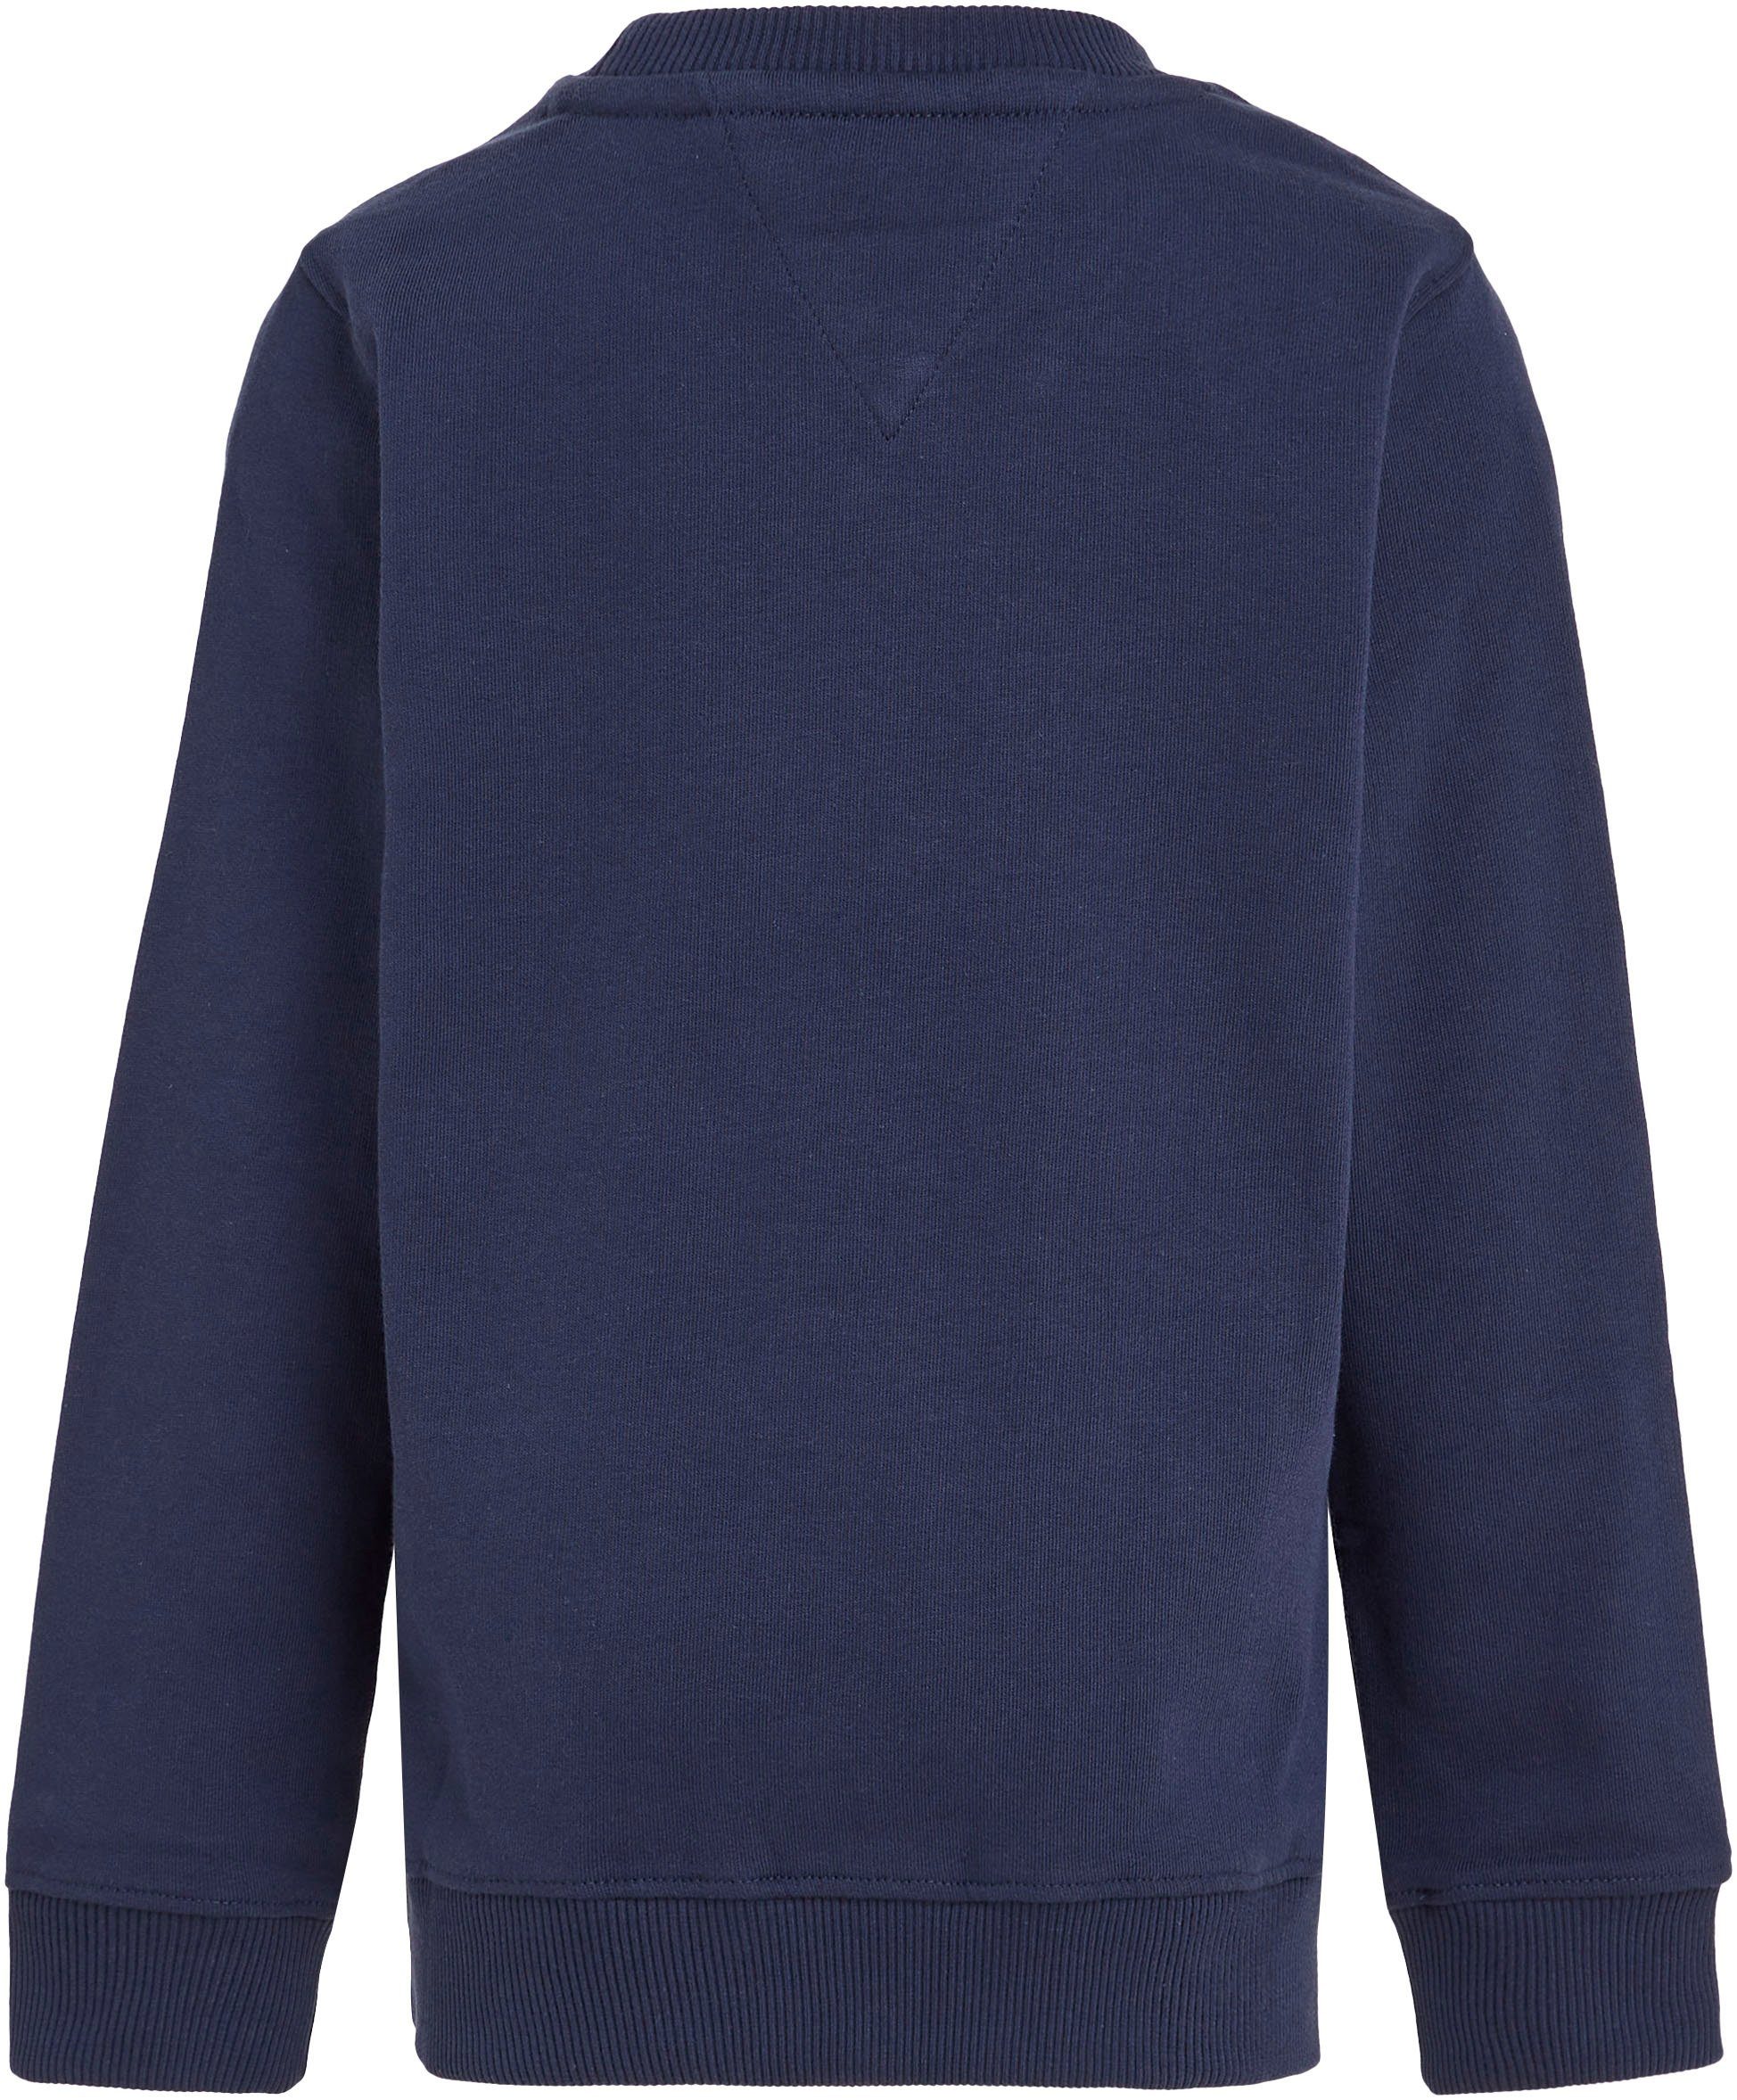 Tommy Hilfiger Sweatshirt ESSENTIAL Junior MiniMe,für SWEATSHIRT Kids Jungen und Kinder Mädchen